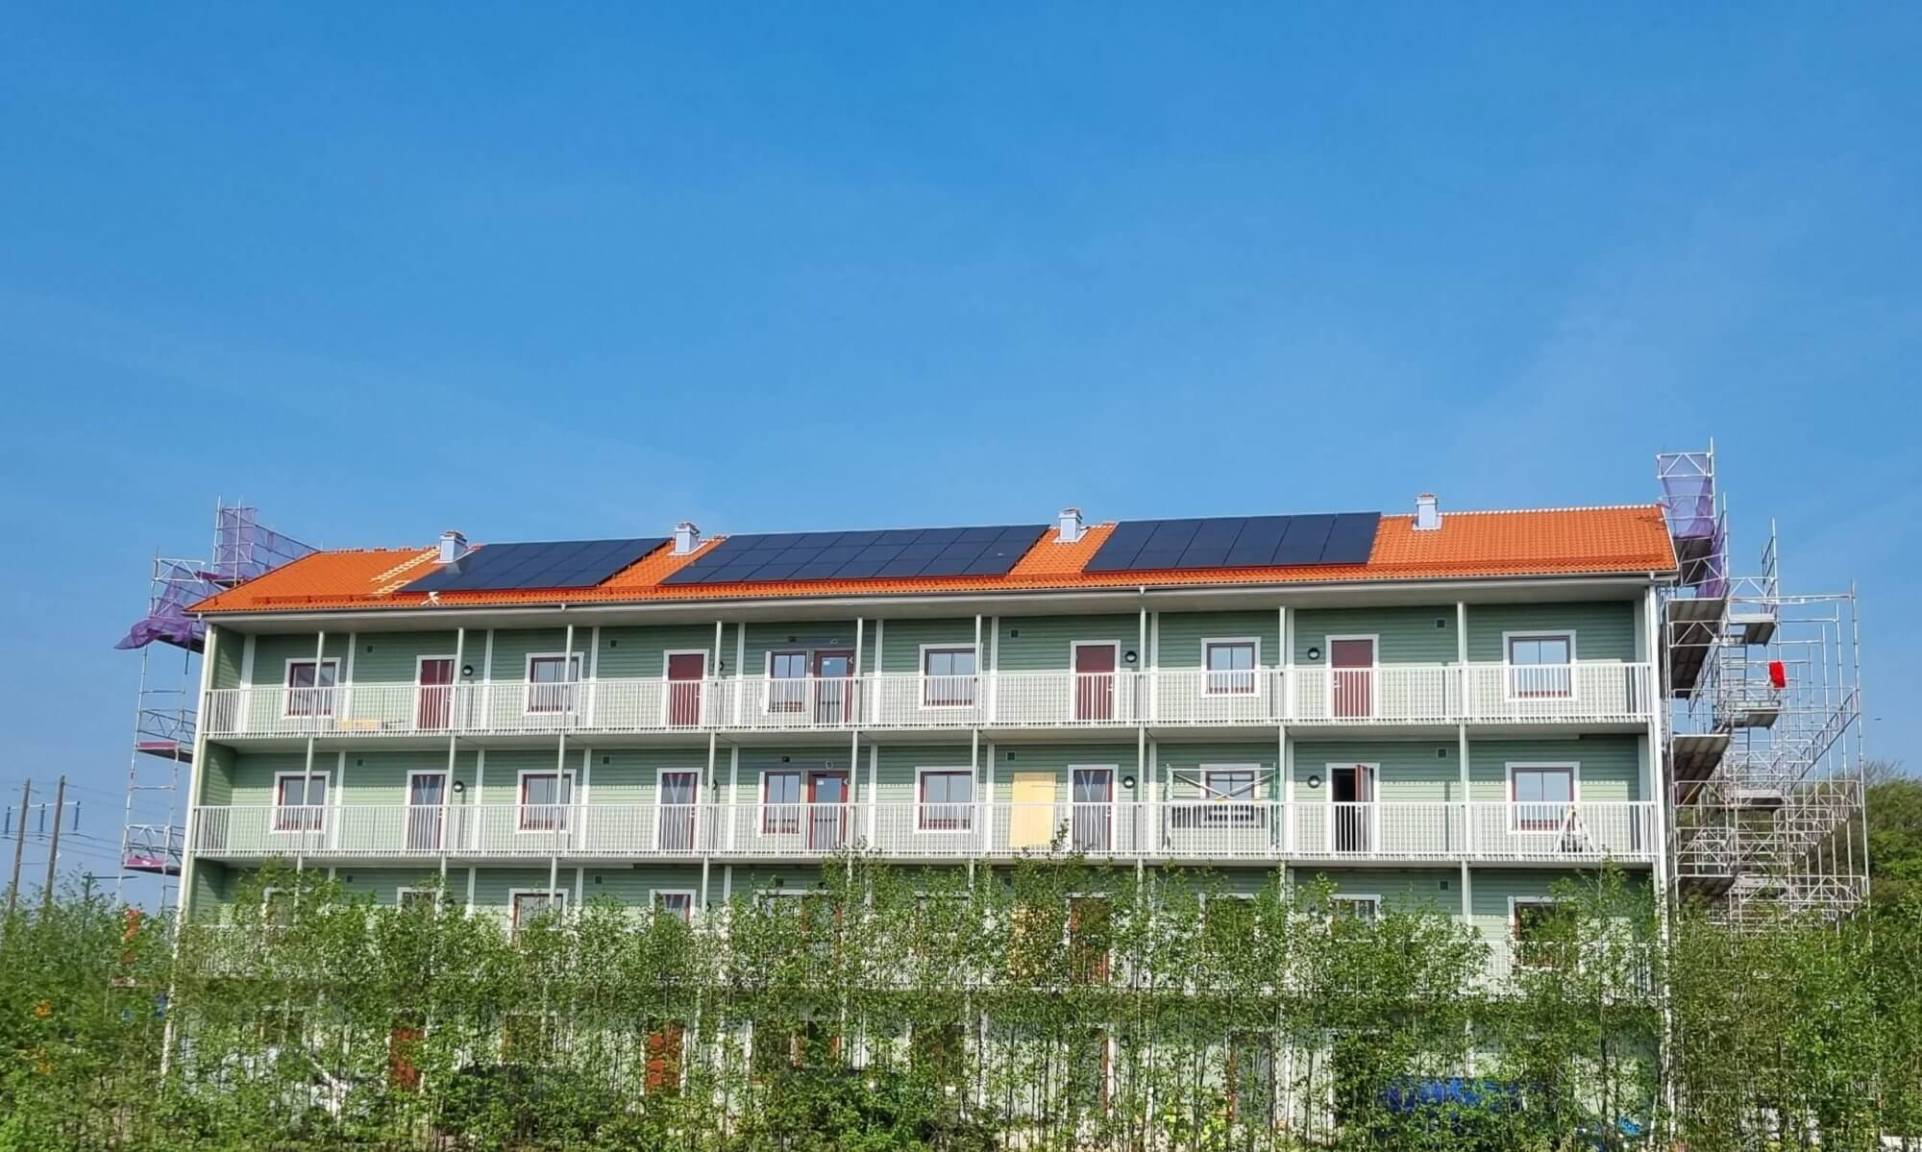 solpaneler på taket av ett flervåningshus i Falkenberg